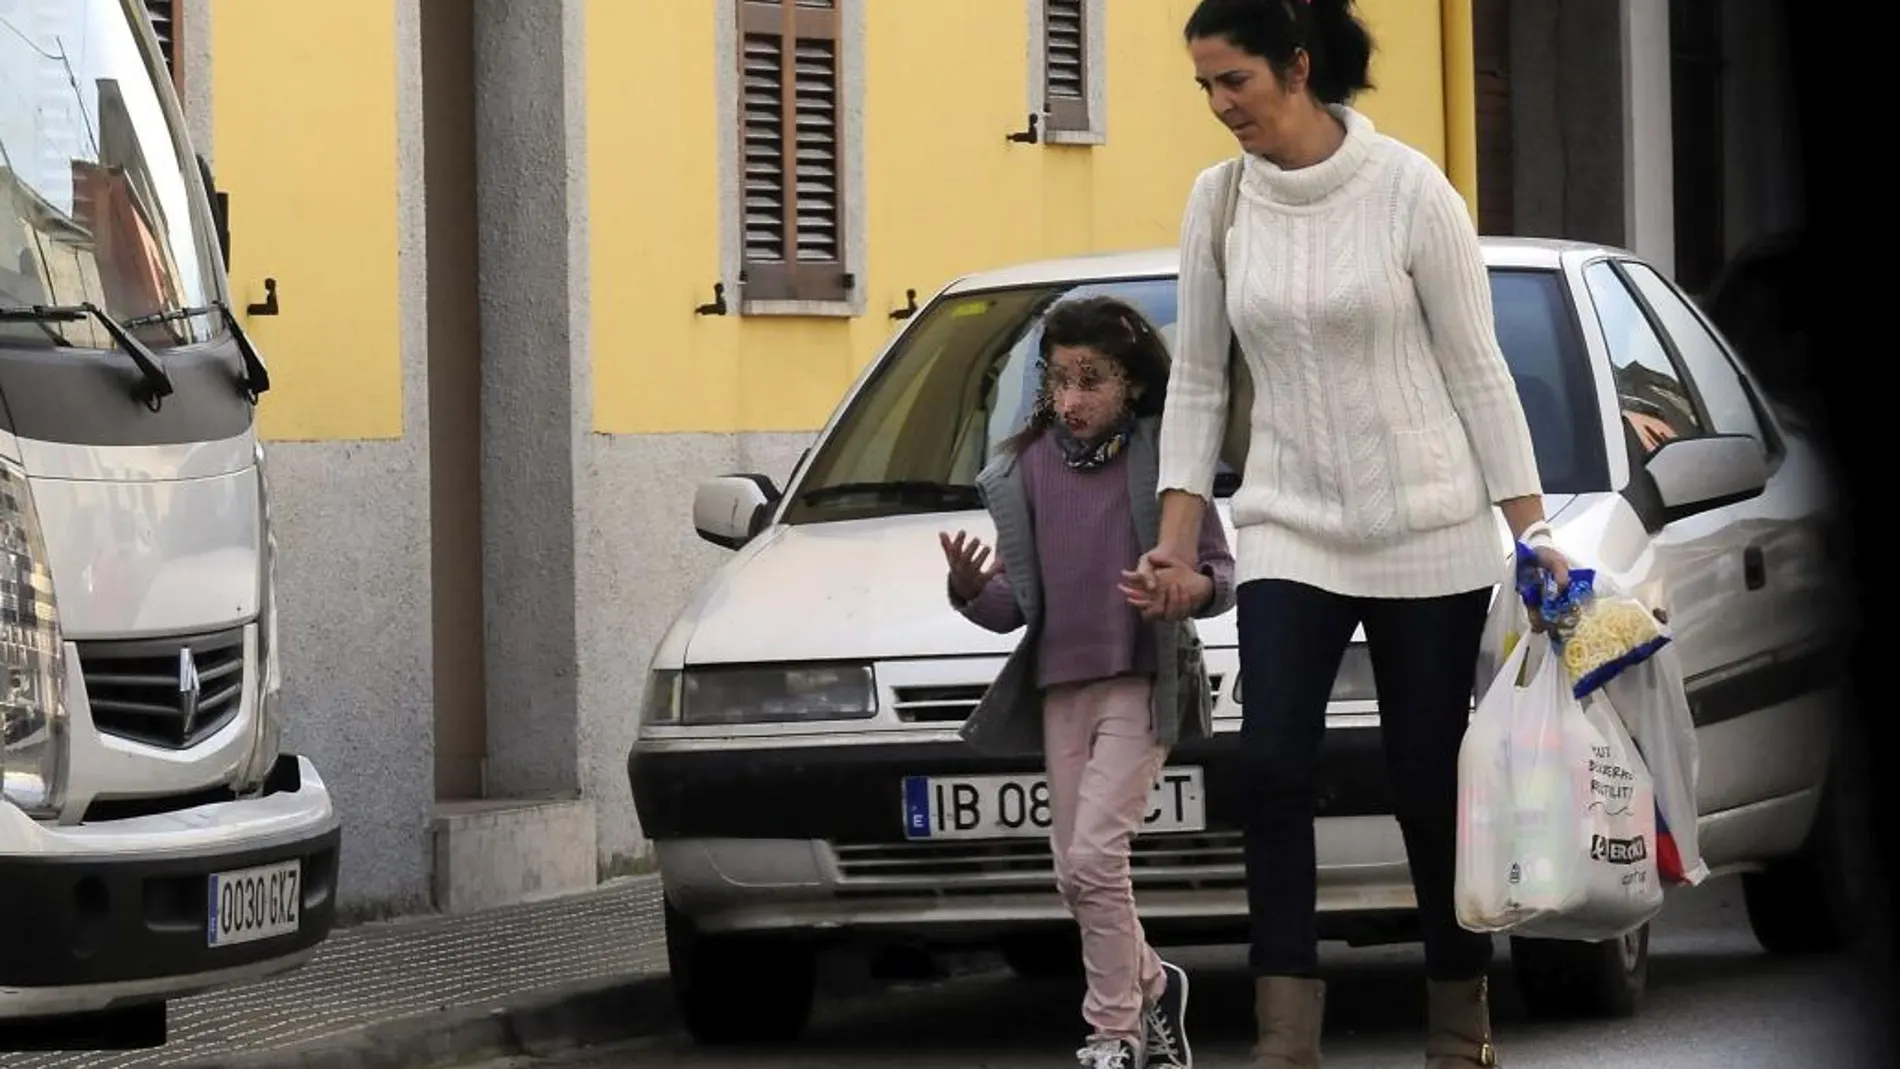 Nadia Nerea salió ayer a la calle acompañada de su tía, que ahora tiene la custodia de la niña